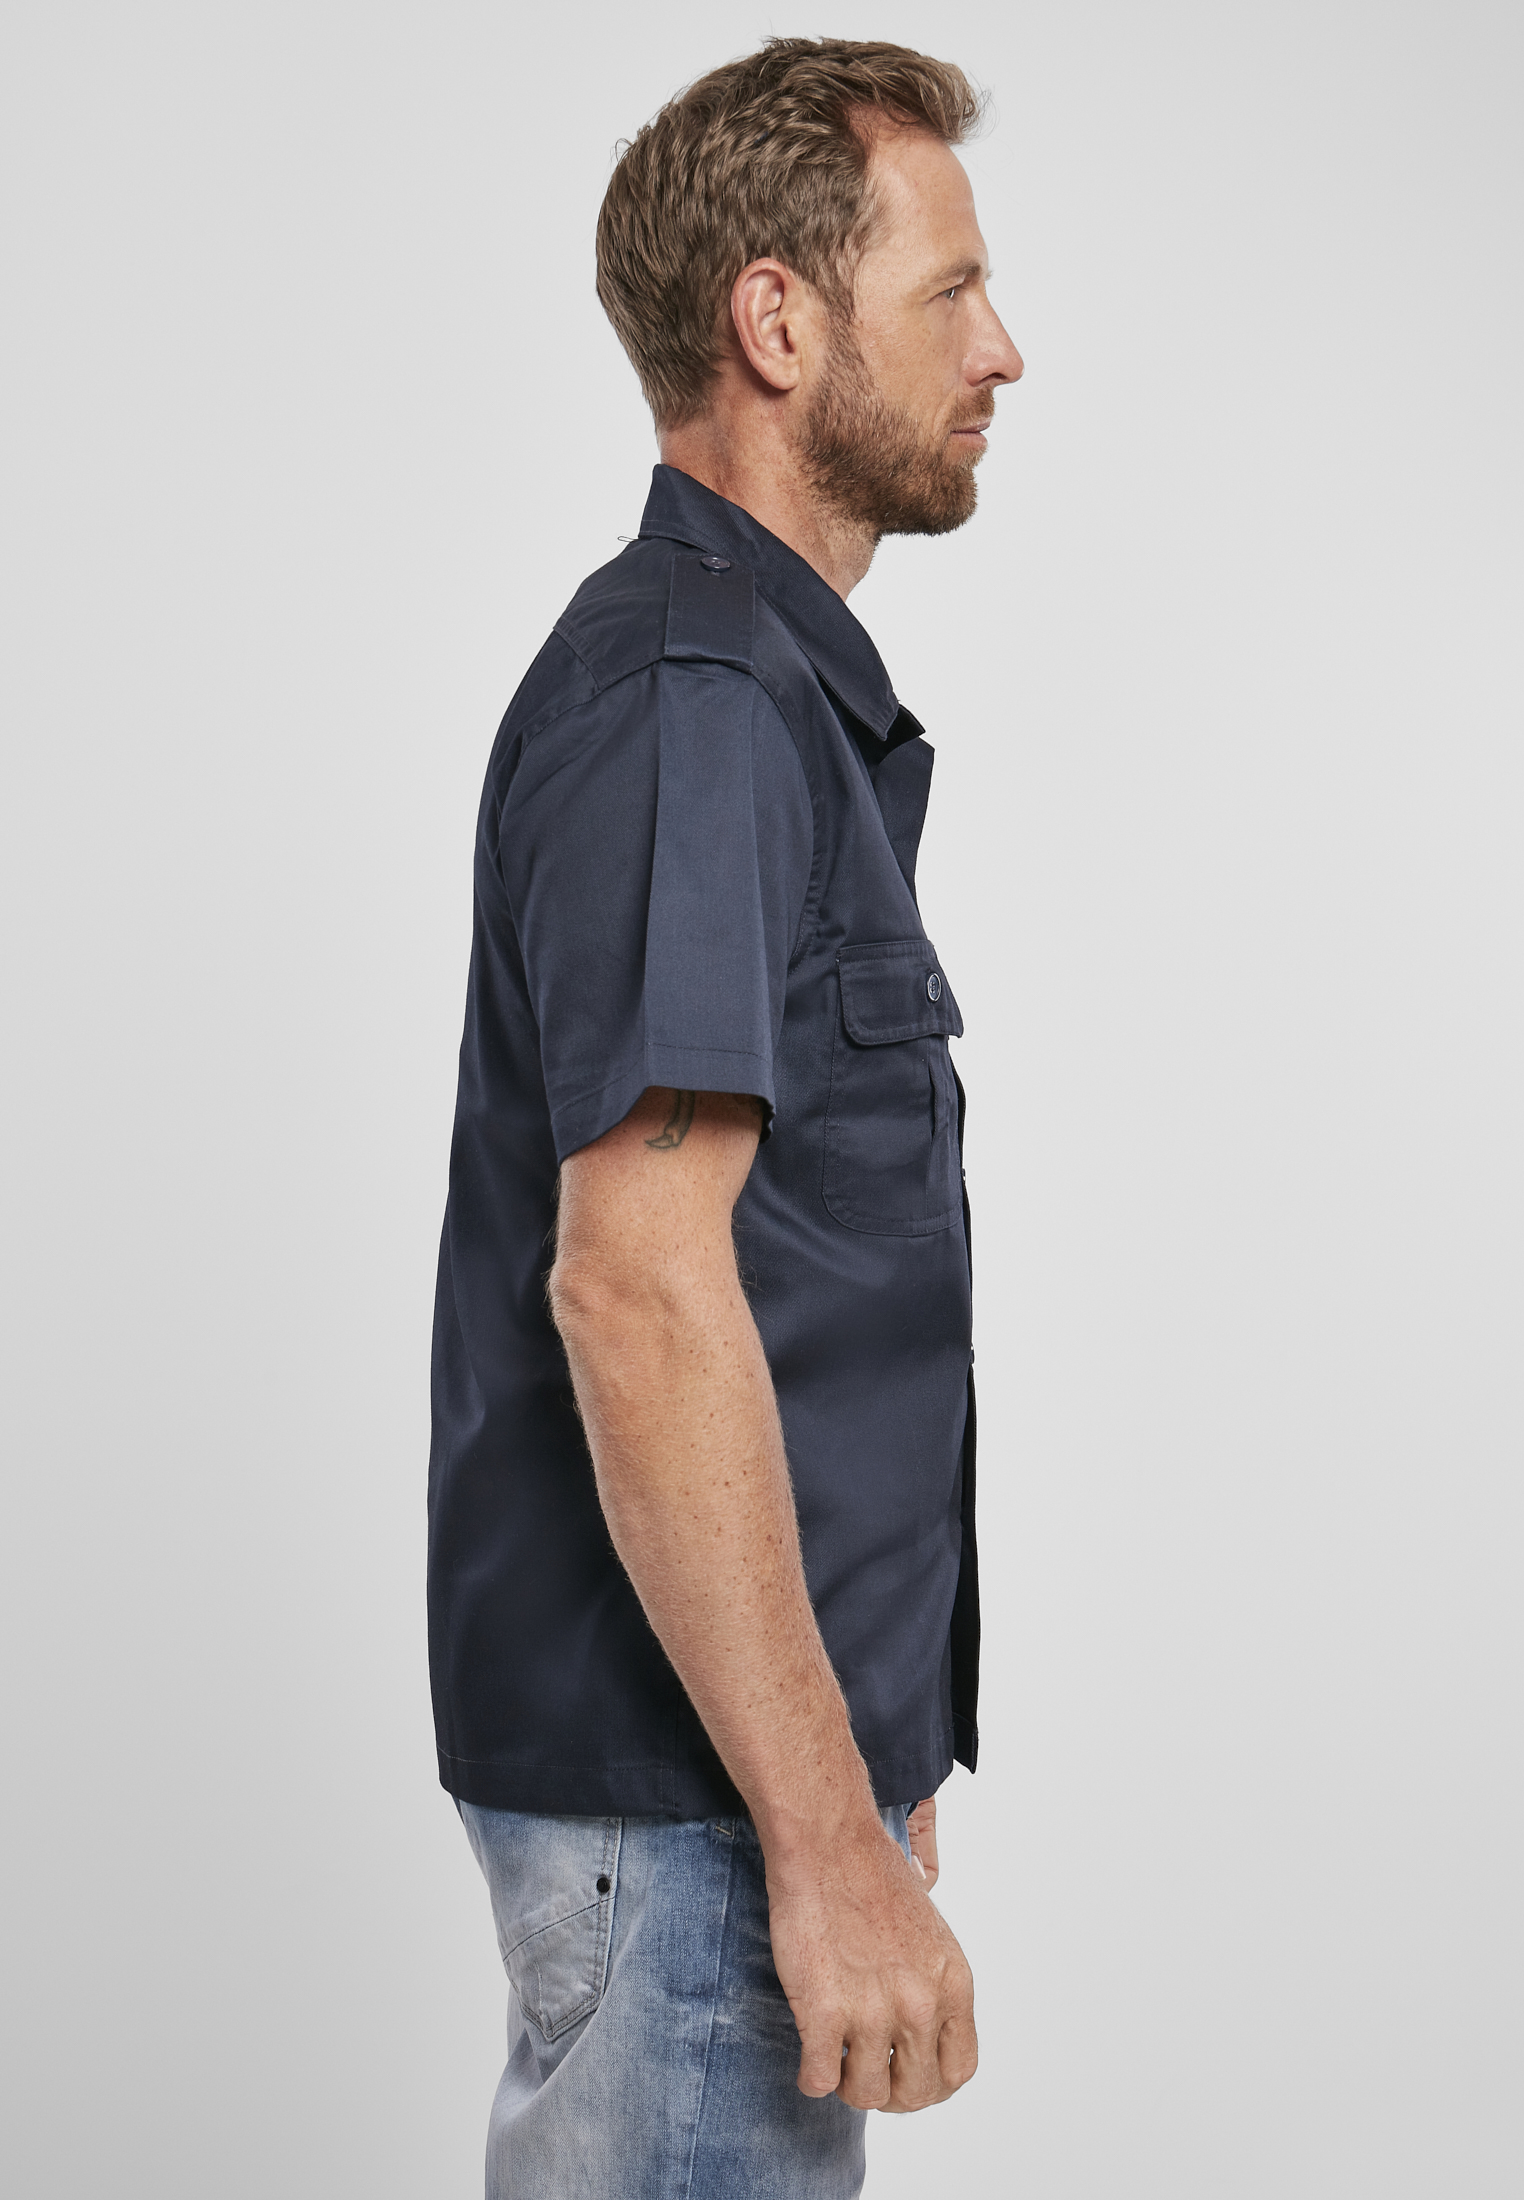 Hemden Short Sleeves US Shirt in Farbe navy